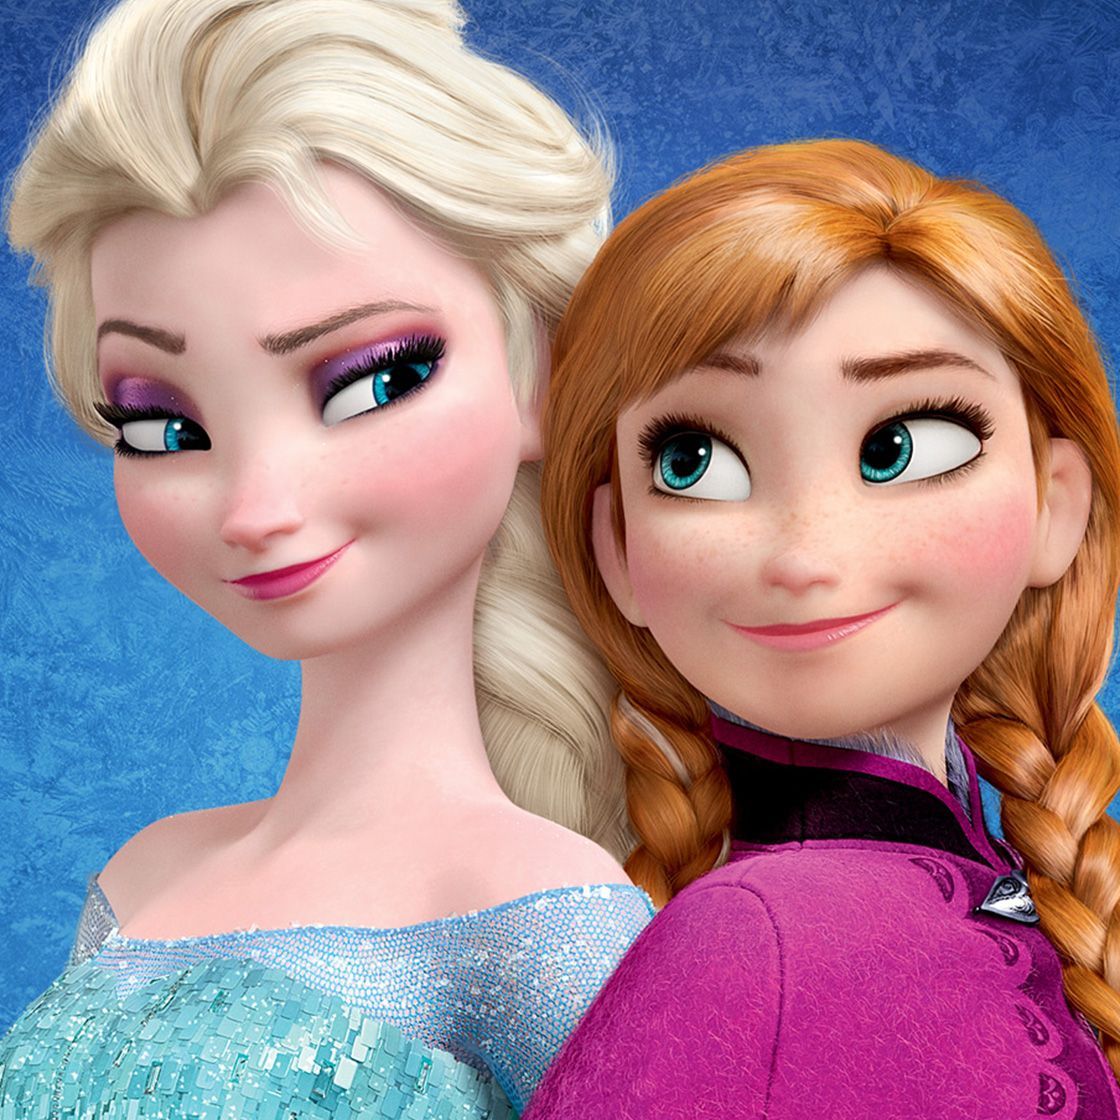 Disney Plus: every single princess ranked